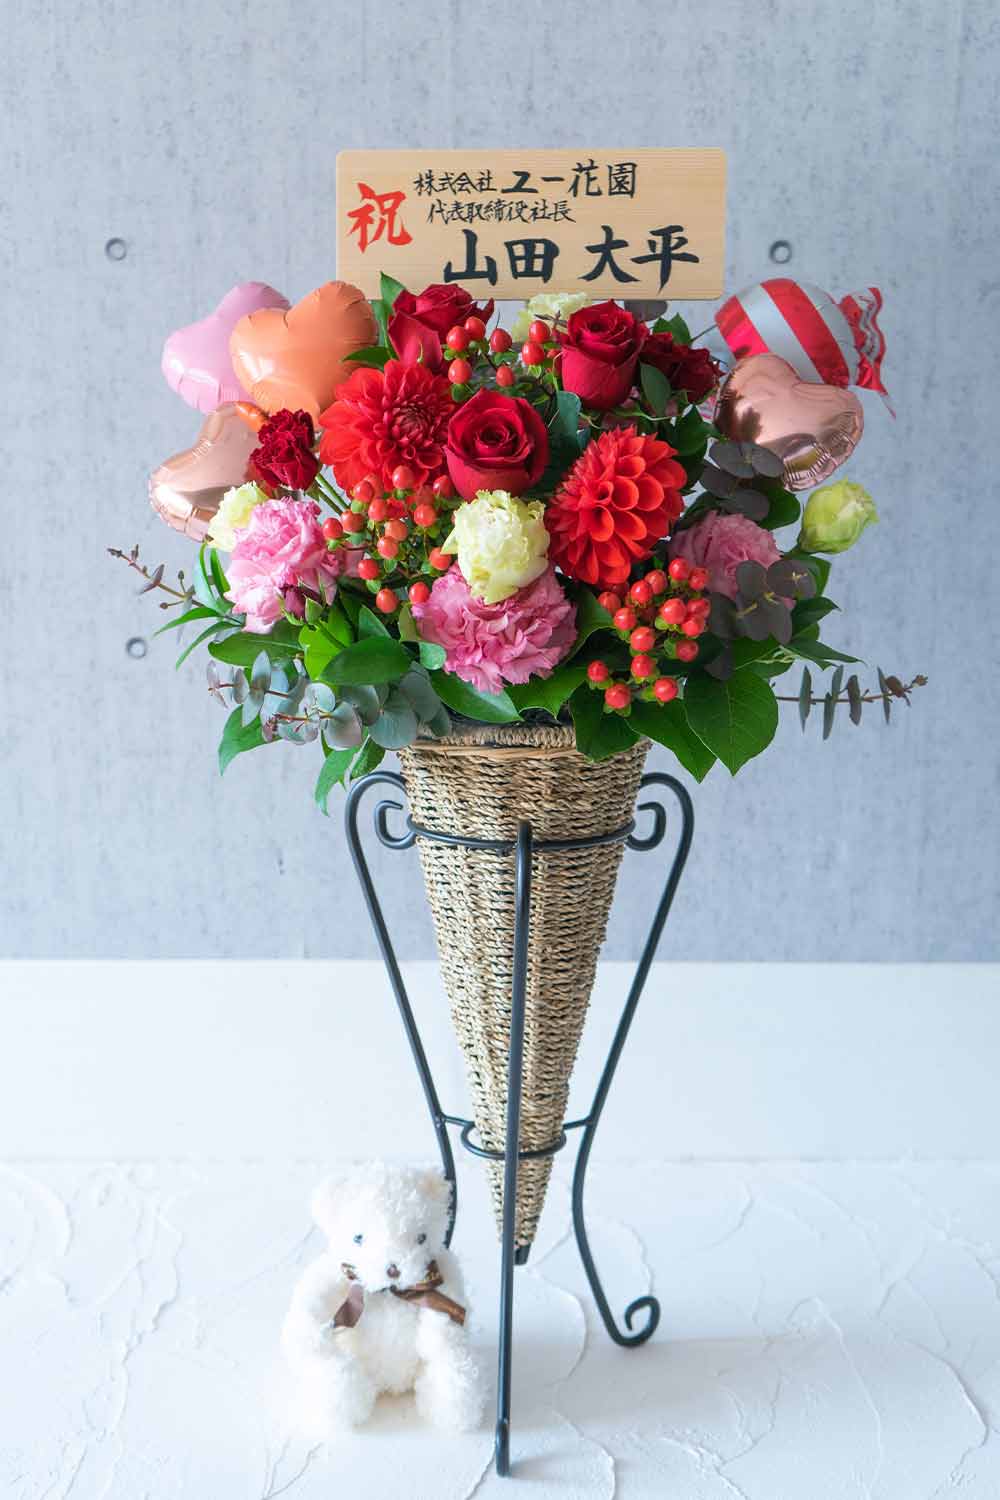 スタンド花風 テディベア バルーンつき かわいいサイズのスタンド花風アレンジメント レッド 高さ80cm お祝い お供えの花 通販ギフトは送料無料の お花の窓口 へ